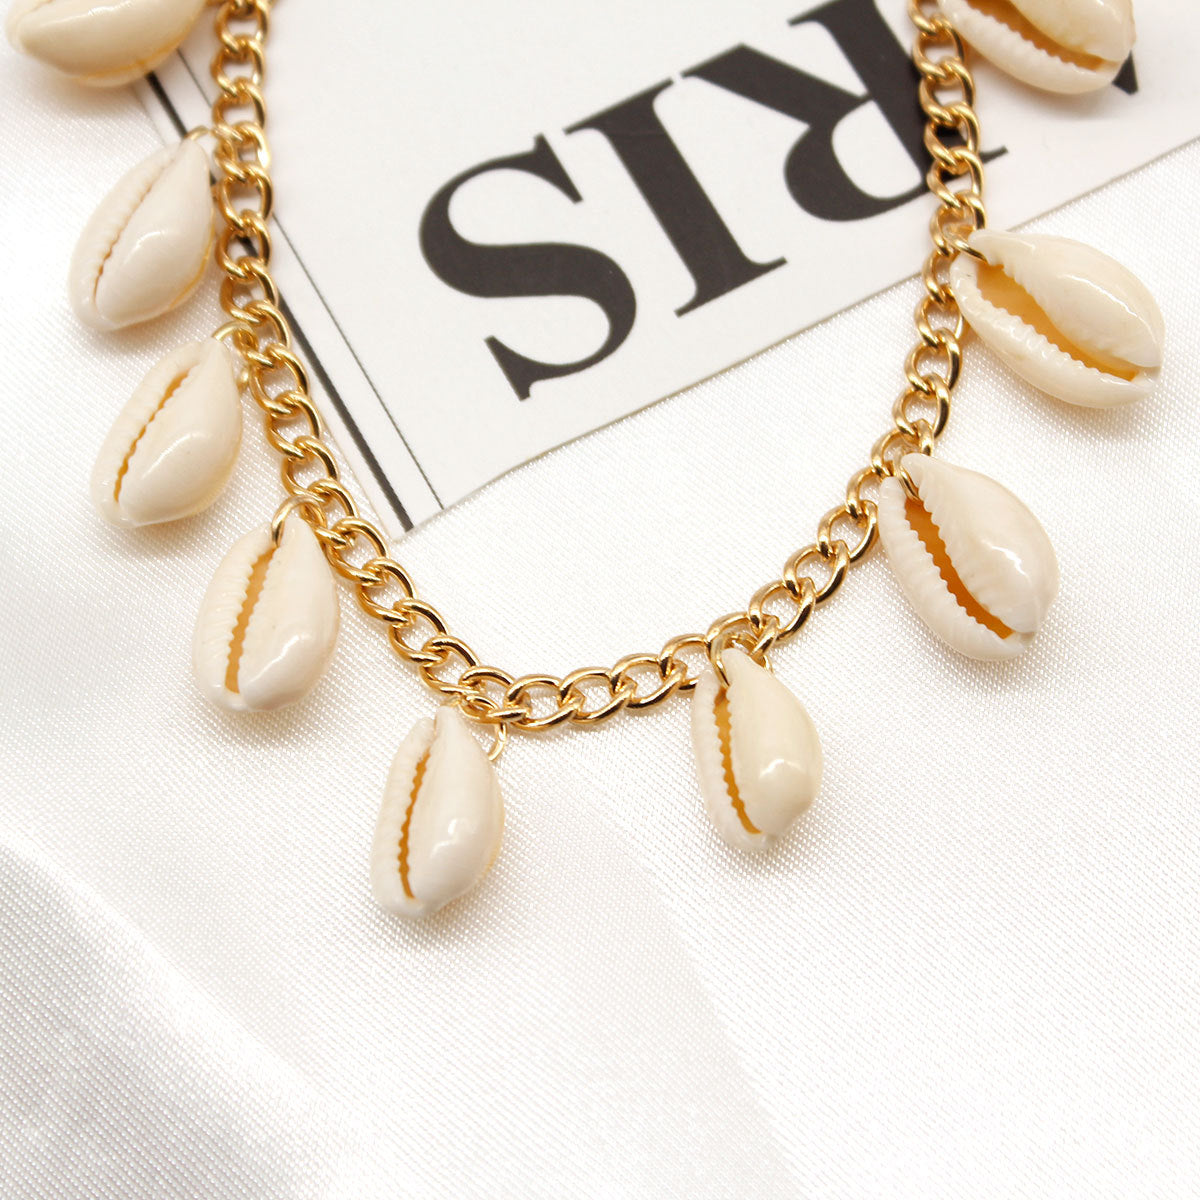 Shell Pendant Anklet Ethnic Style Handmade